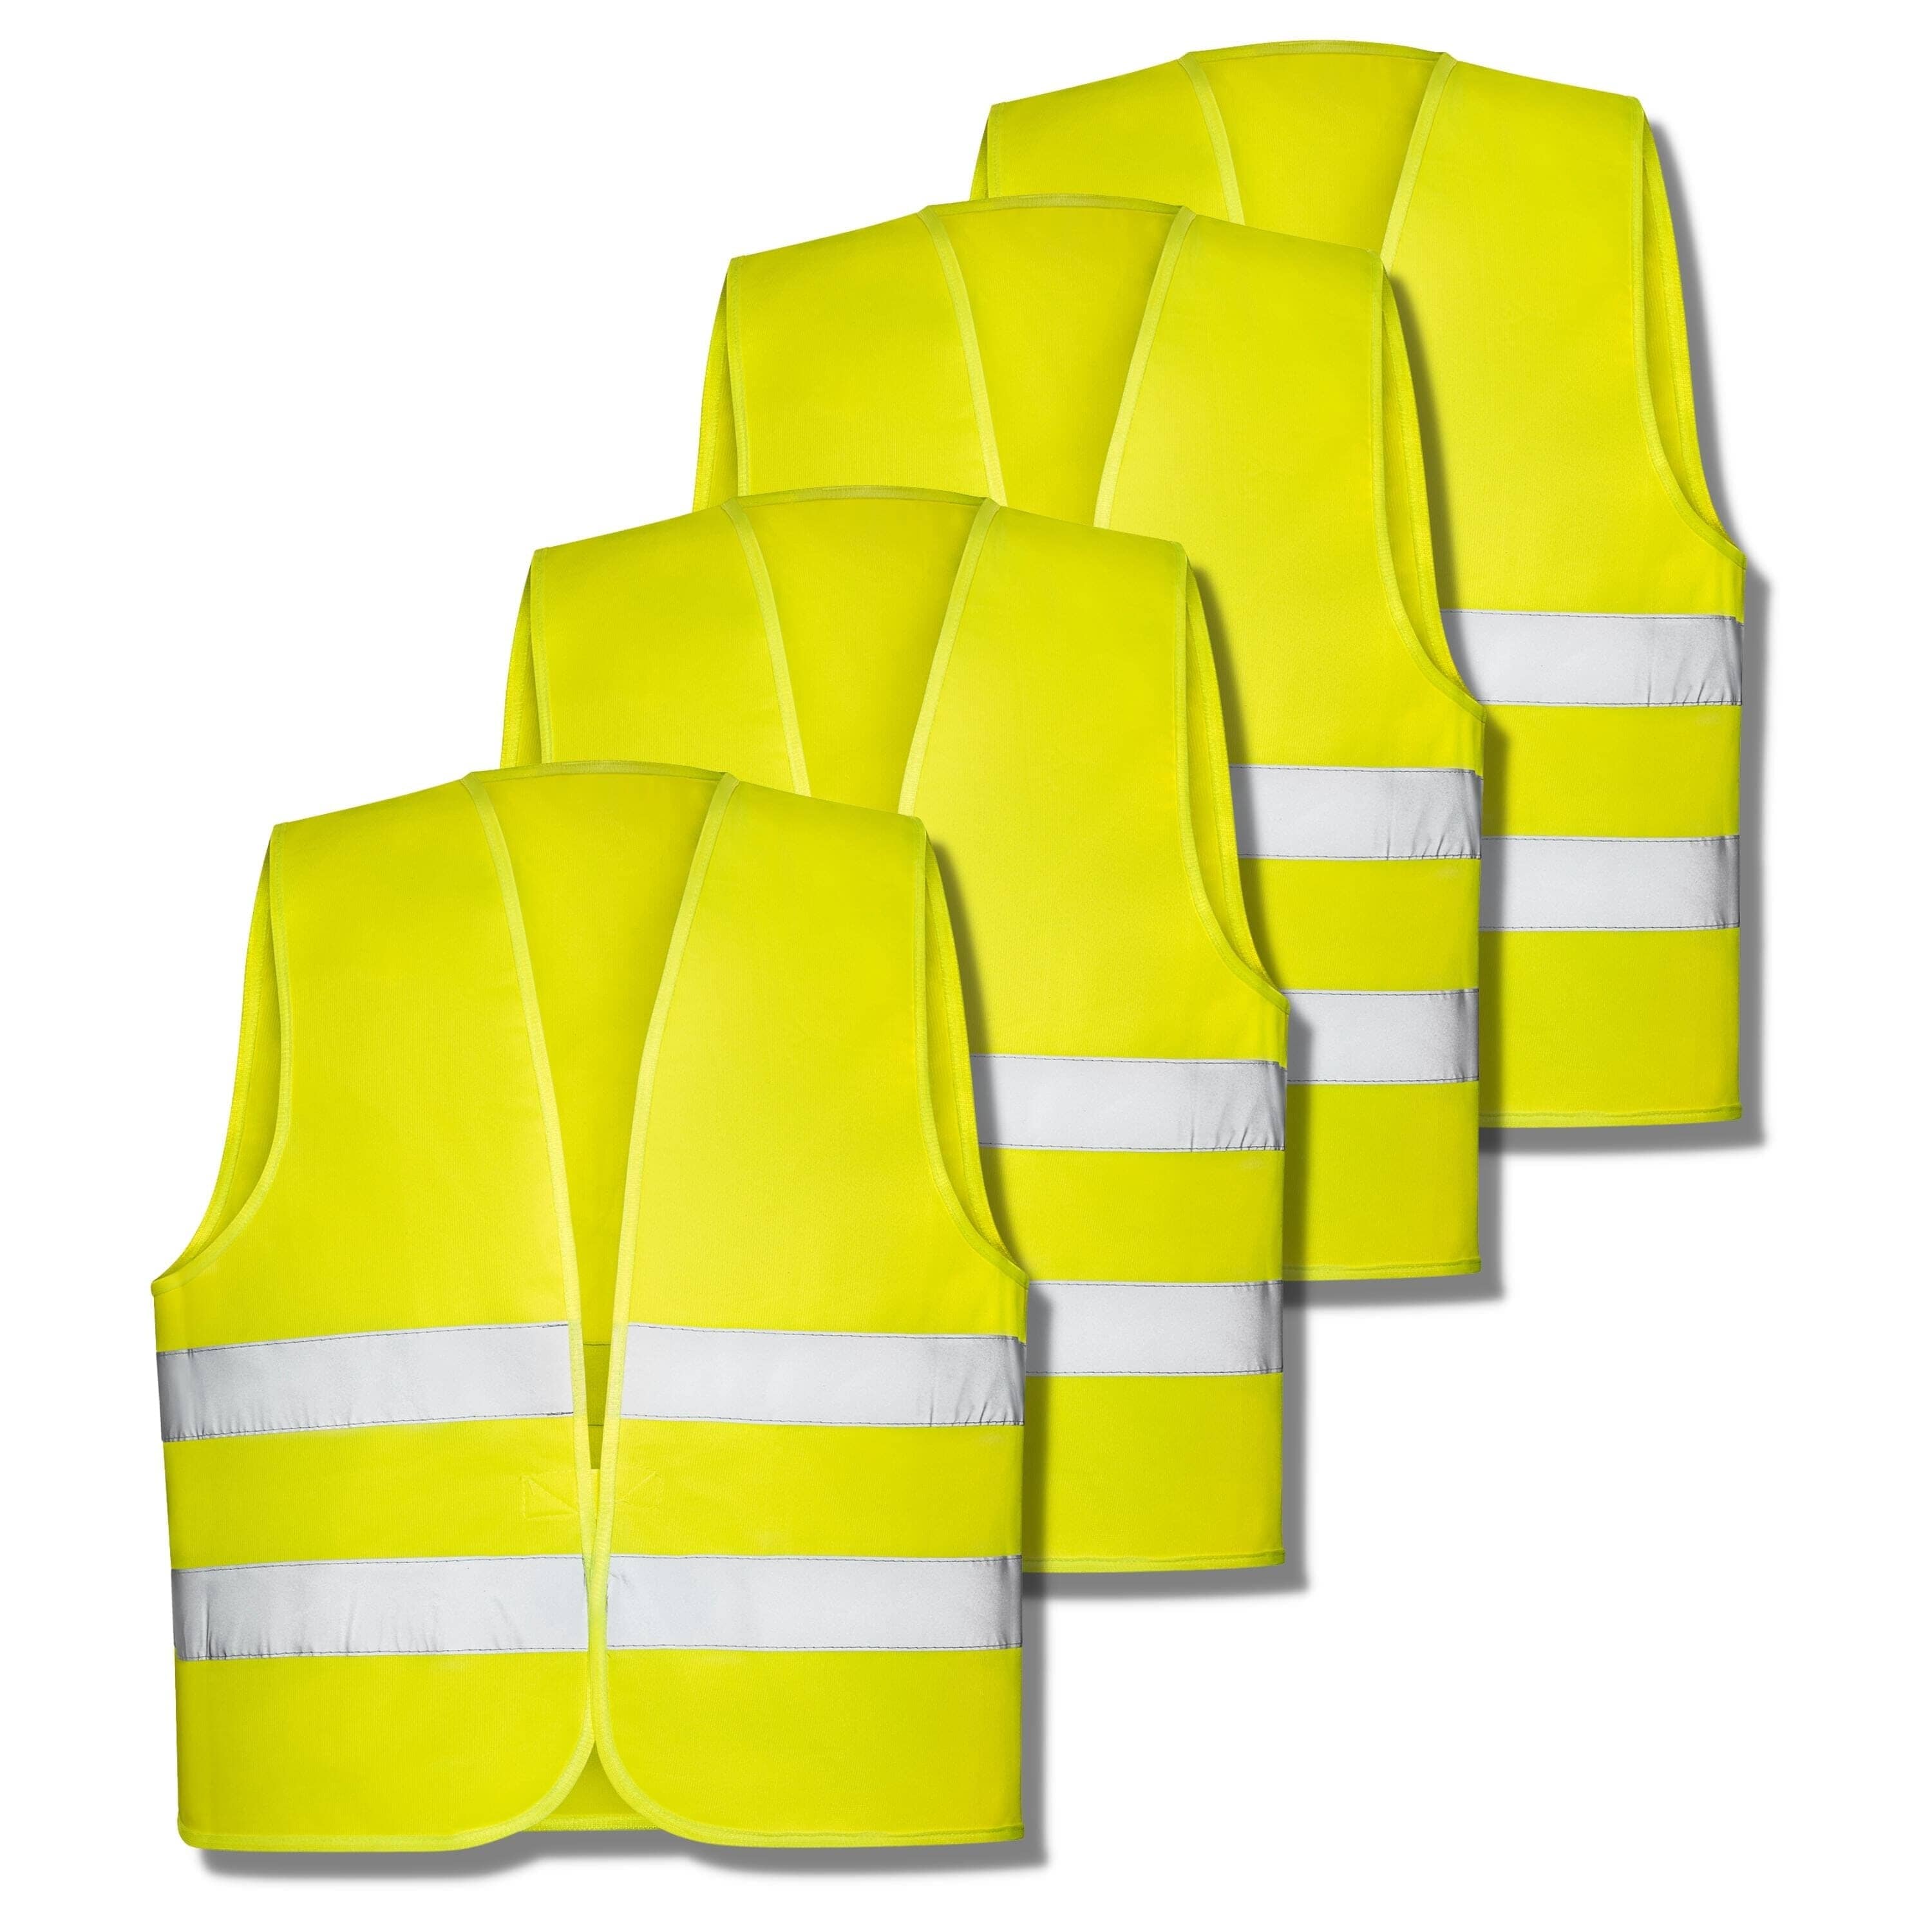 Corpower Warnwesten Auto,6 Stück Pannenweste Warnweste  Gelb,Sicherheitsweste Erwachsene,360° Reflektierend Warnweste  Auto,Warnschutzweste für